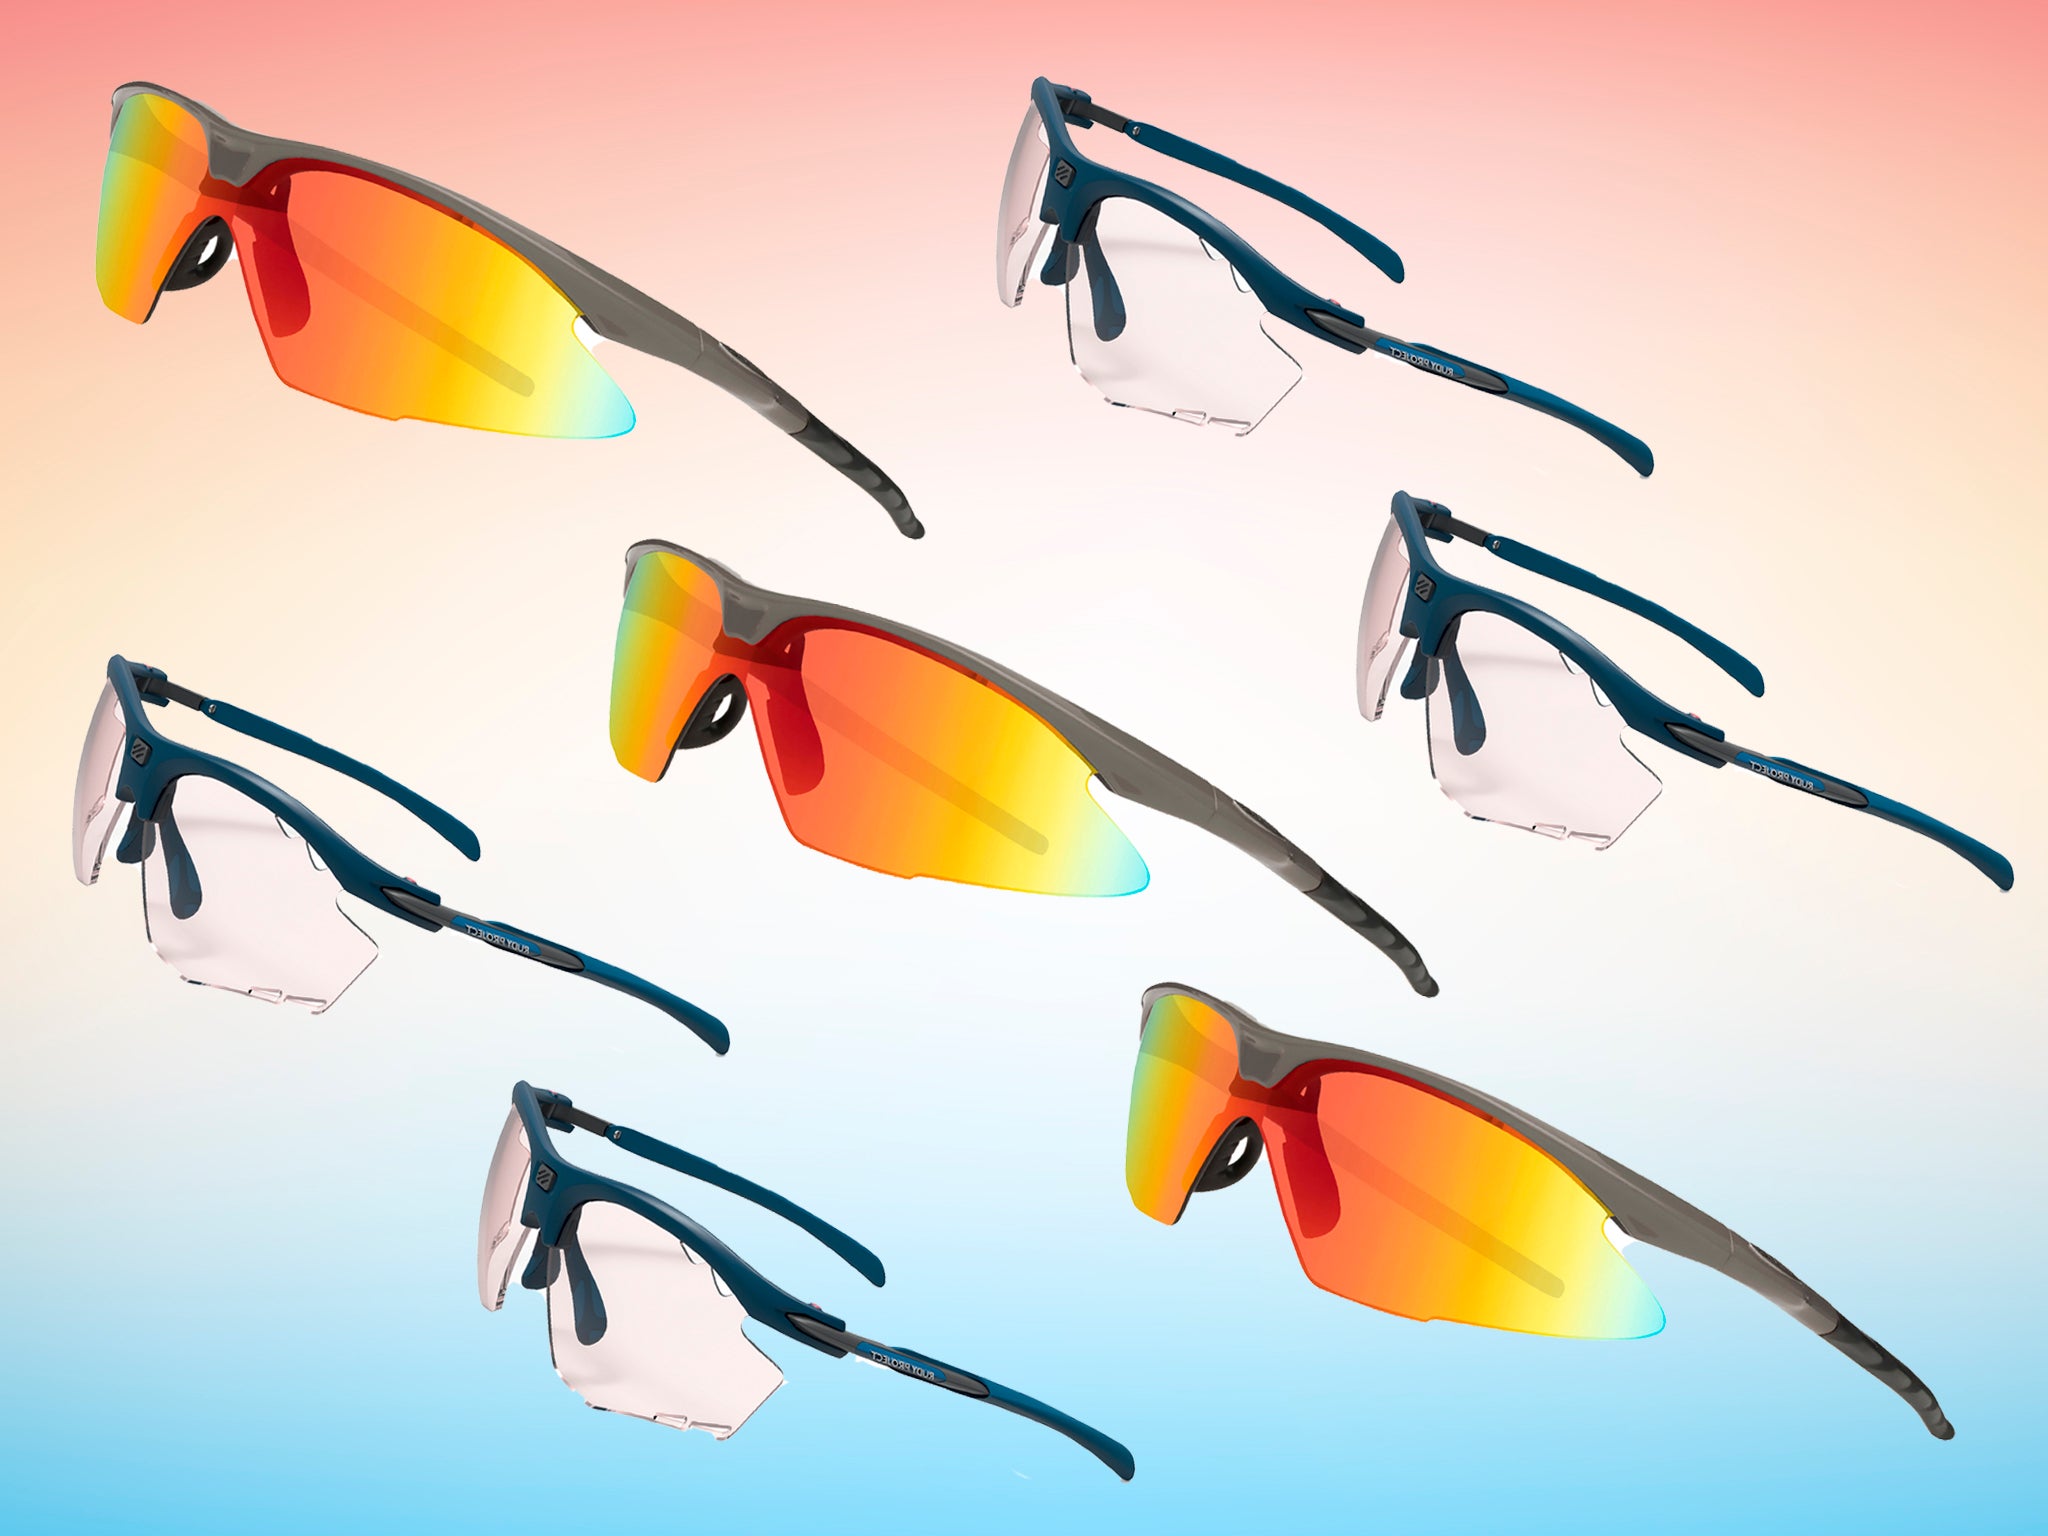 sunglasses for biking and running